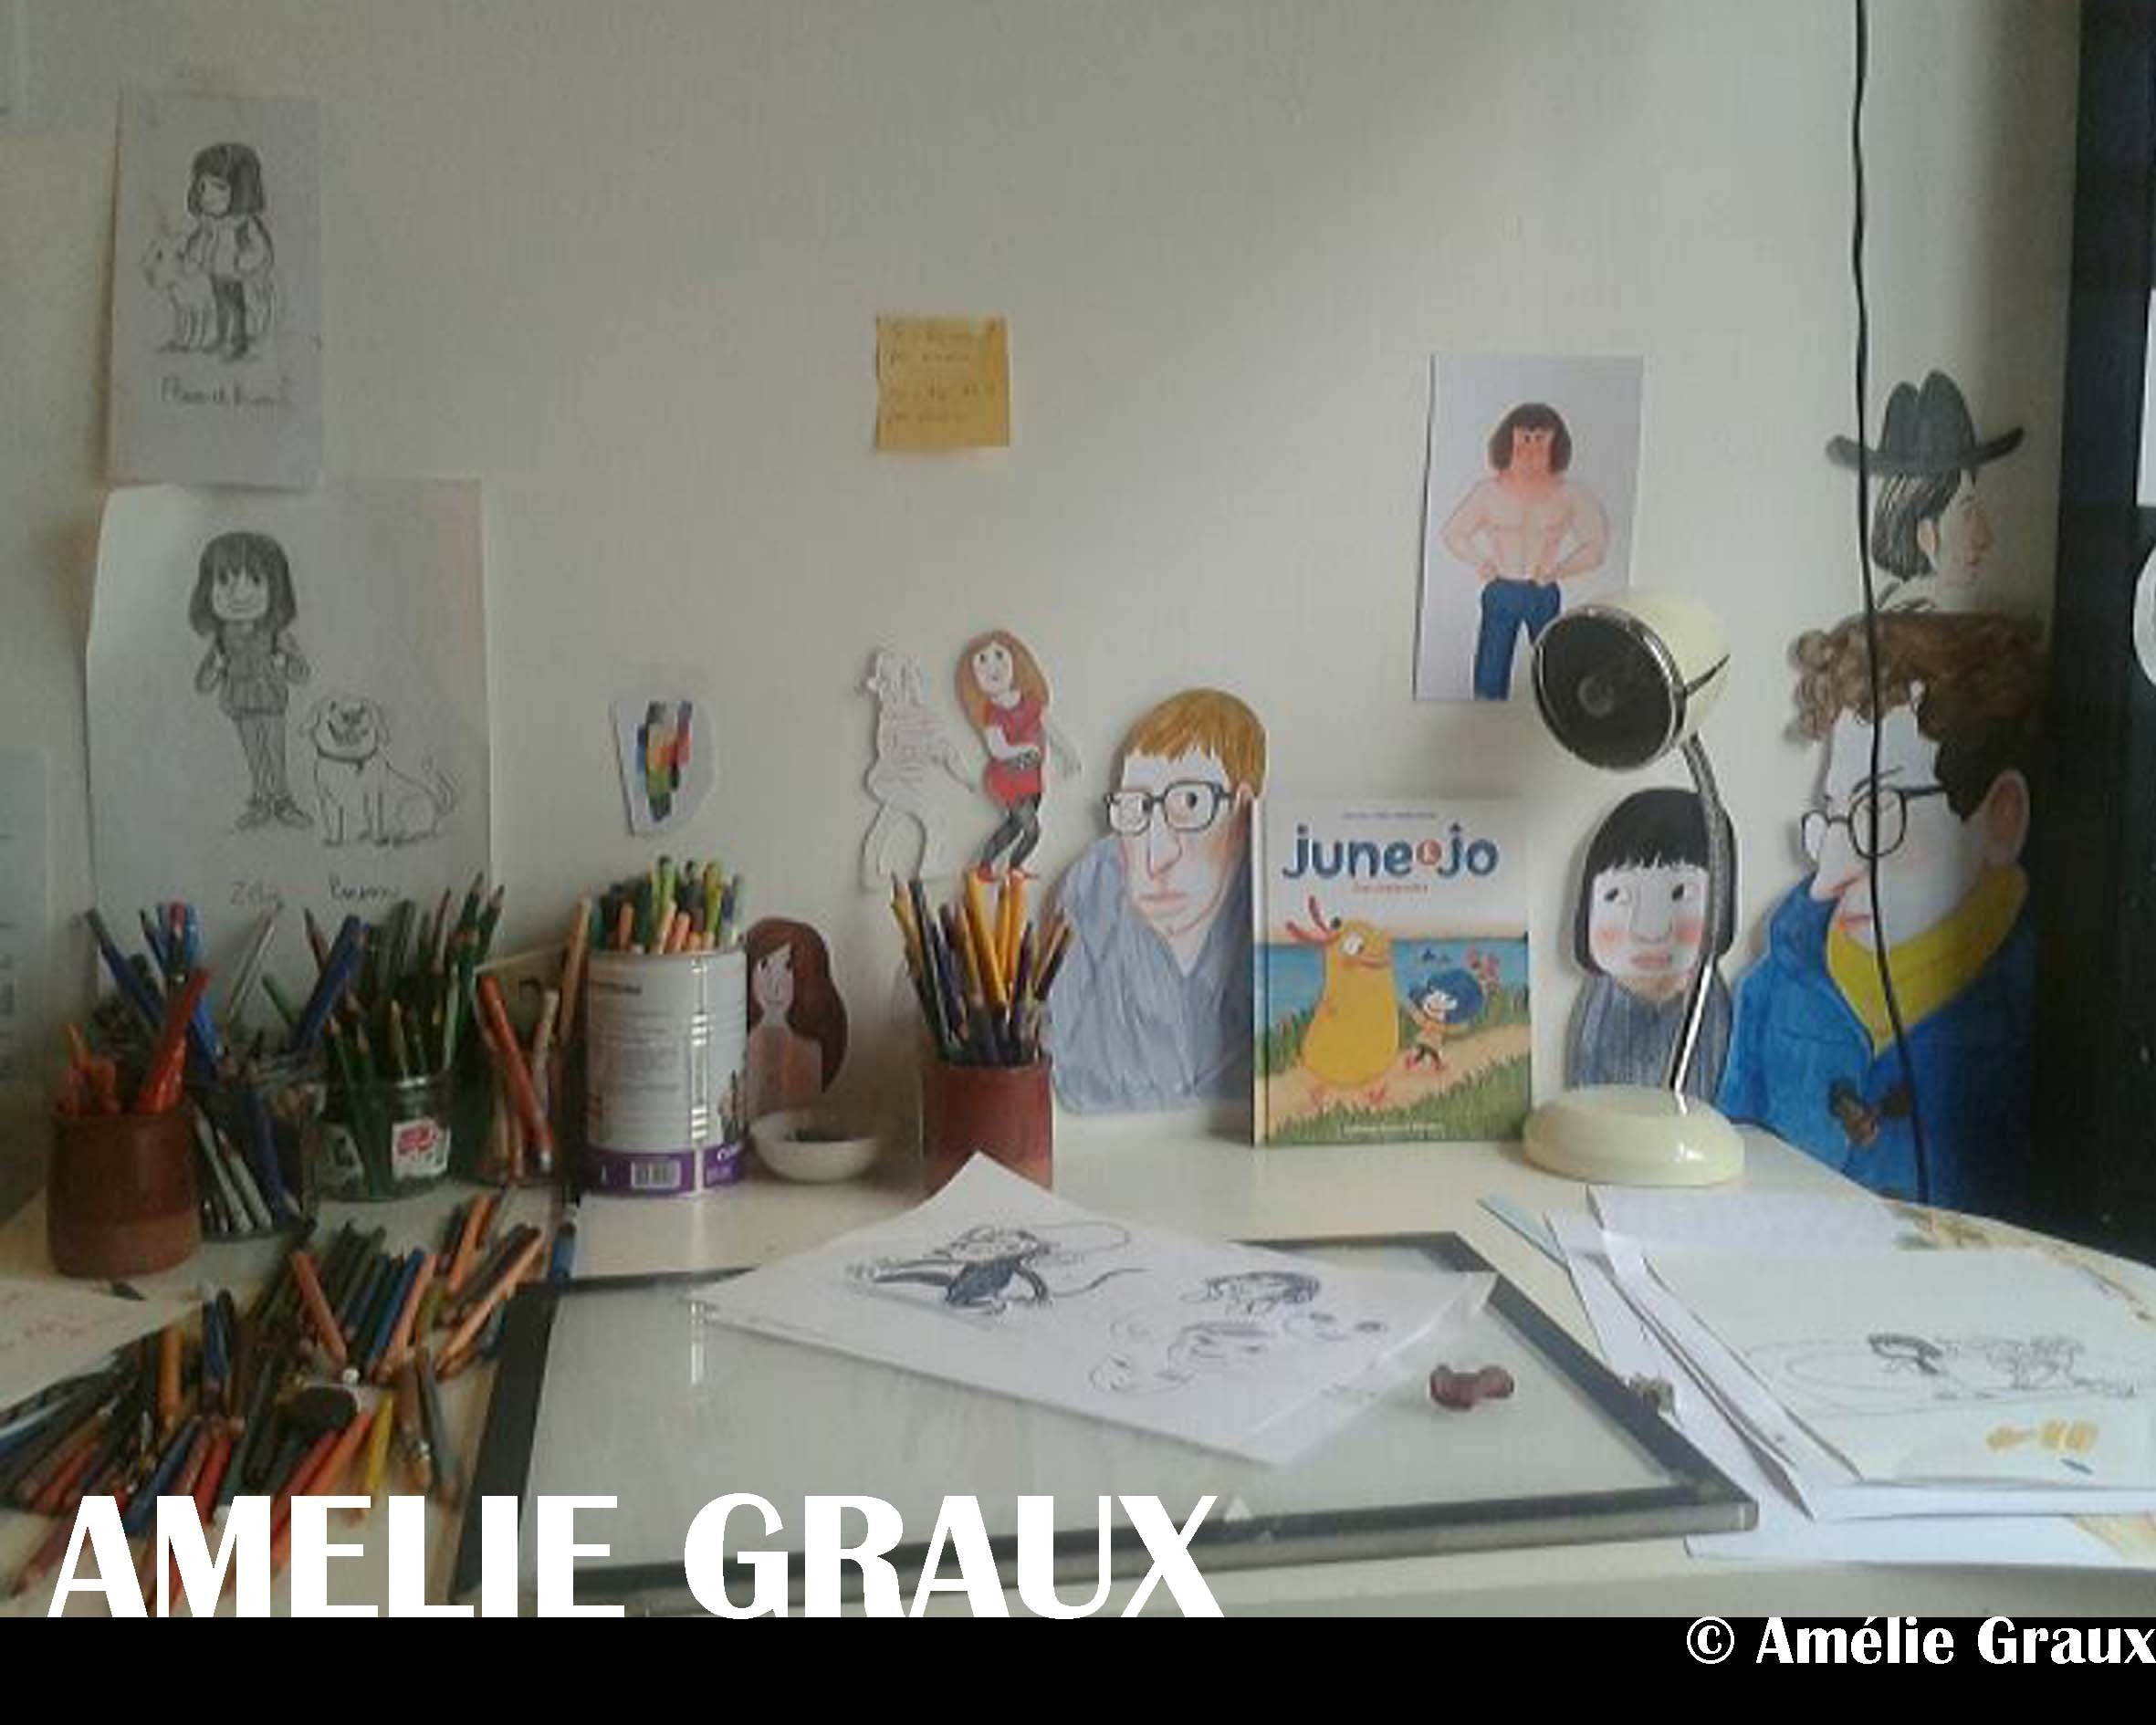 Amélie Graux